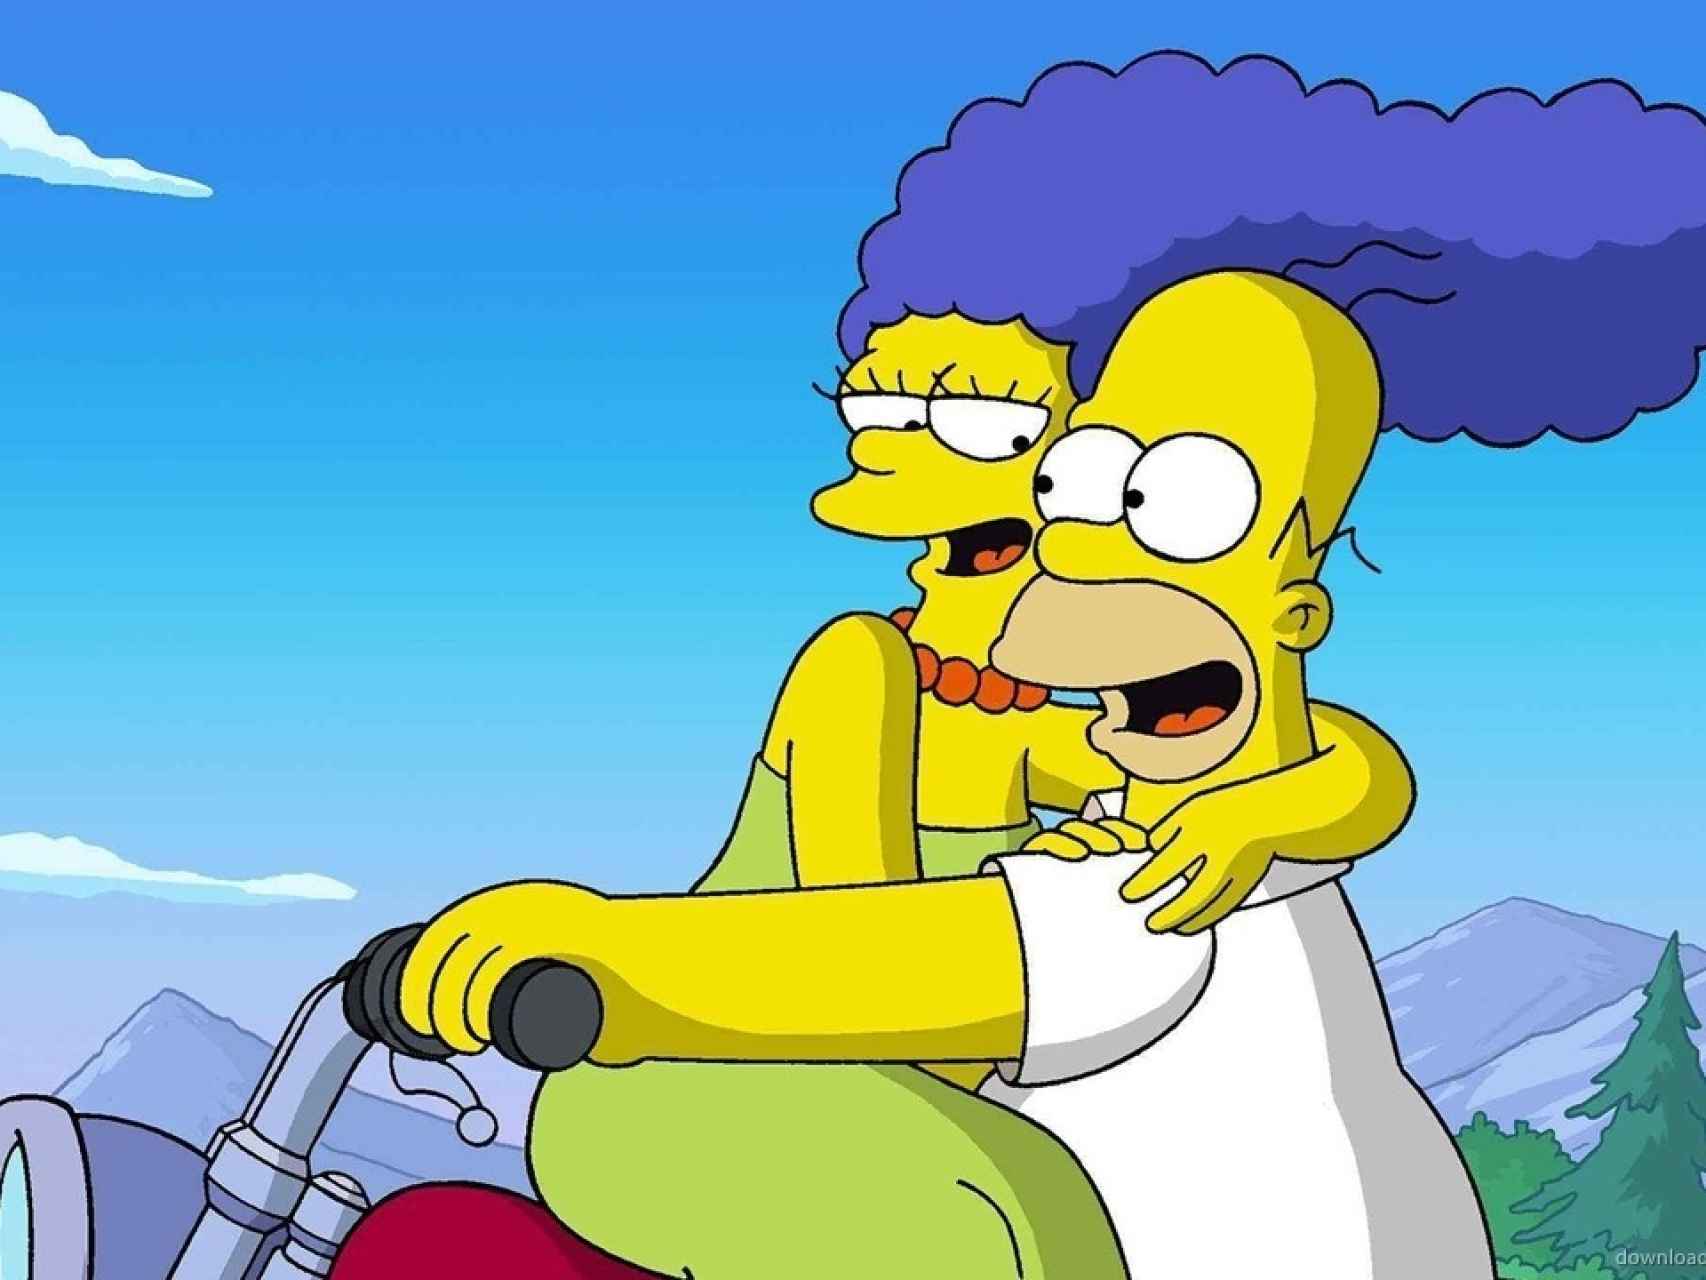 Marge y Homer en un fotograma de la serie.